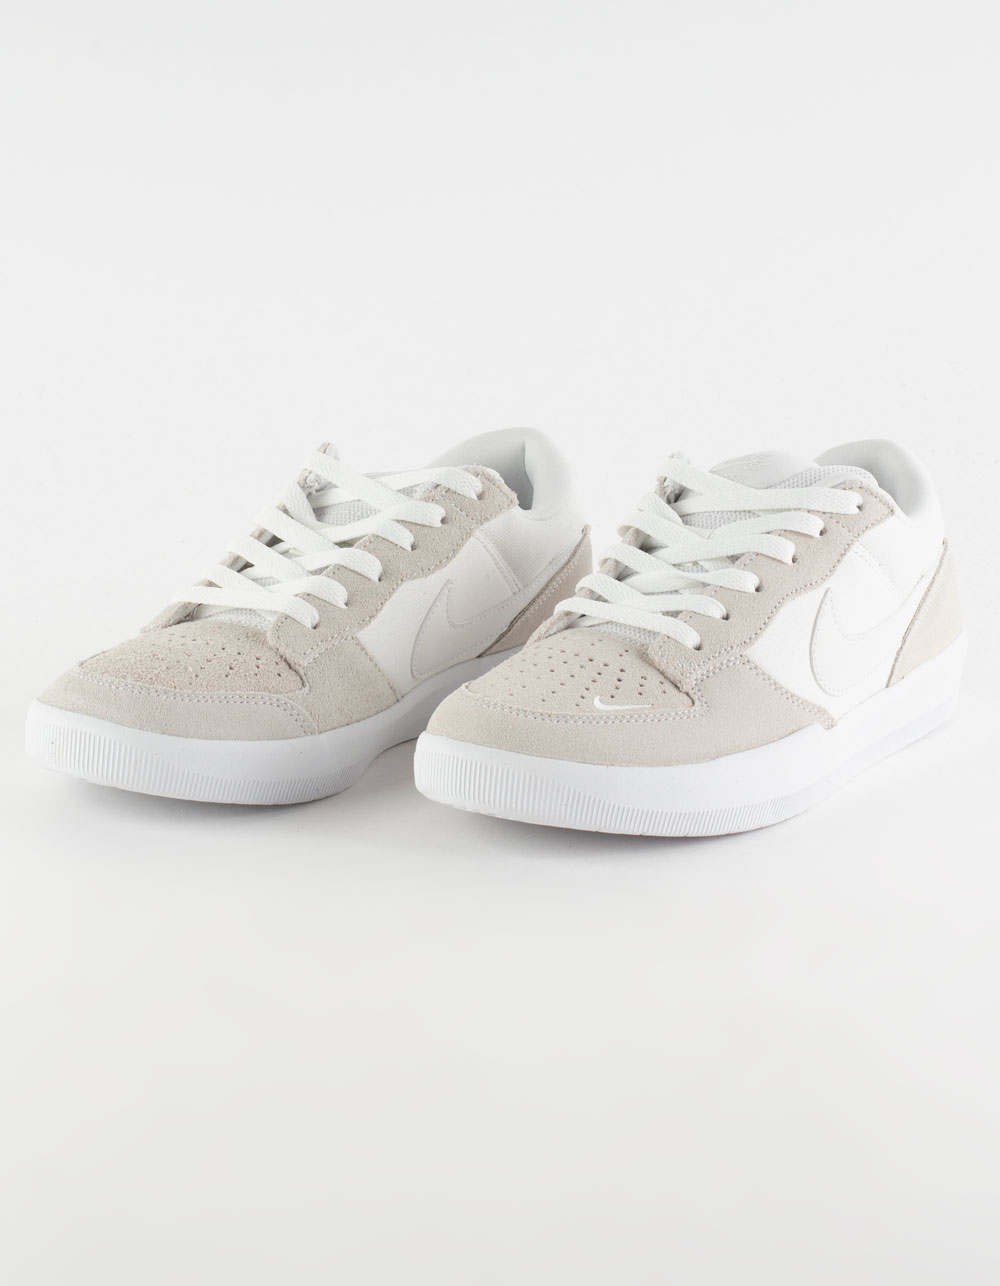 Teasing Ledig ost NIKE SB Force 58 Skate Shoes - OFF WHITE | Tillys